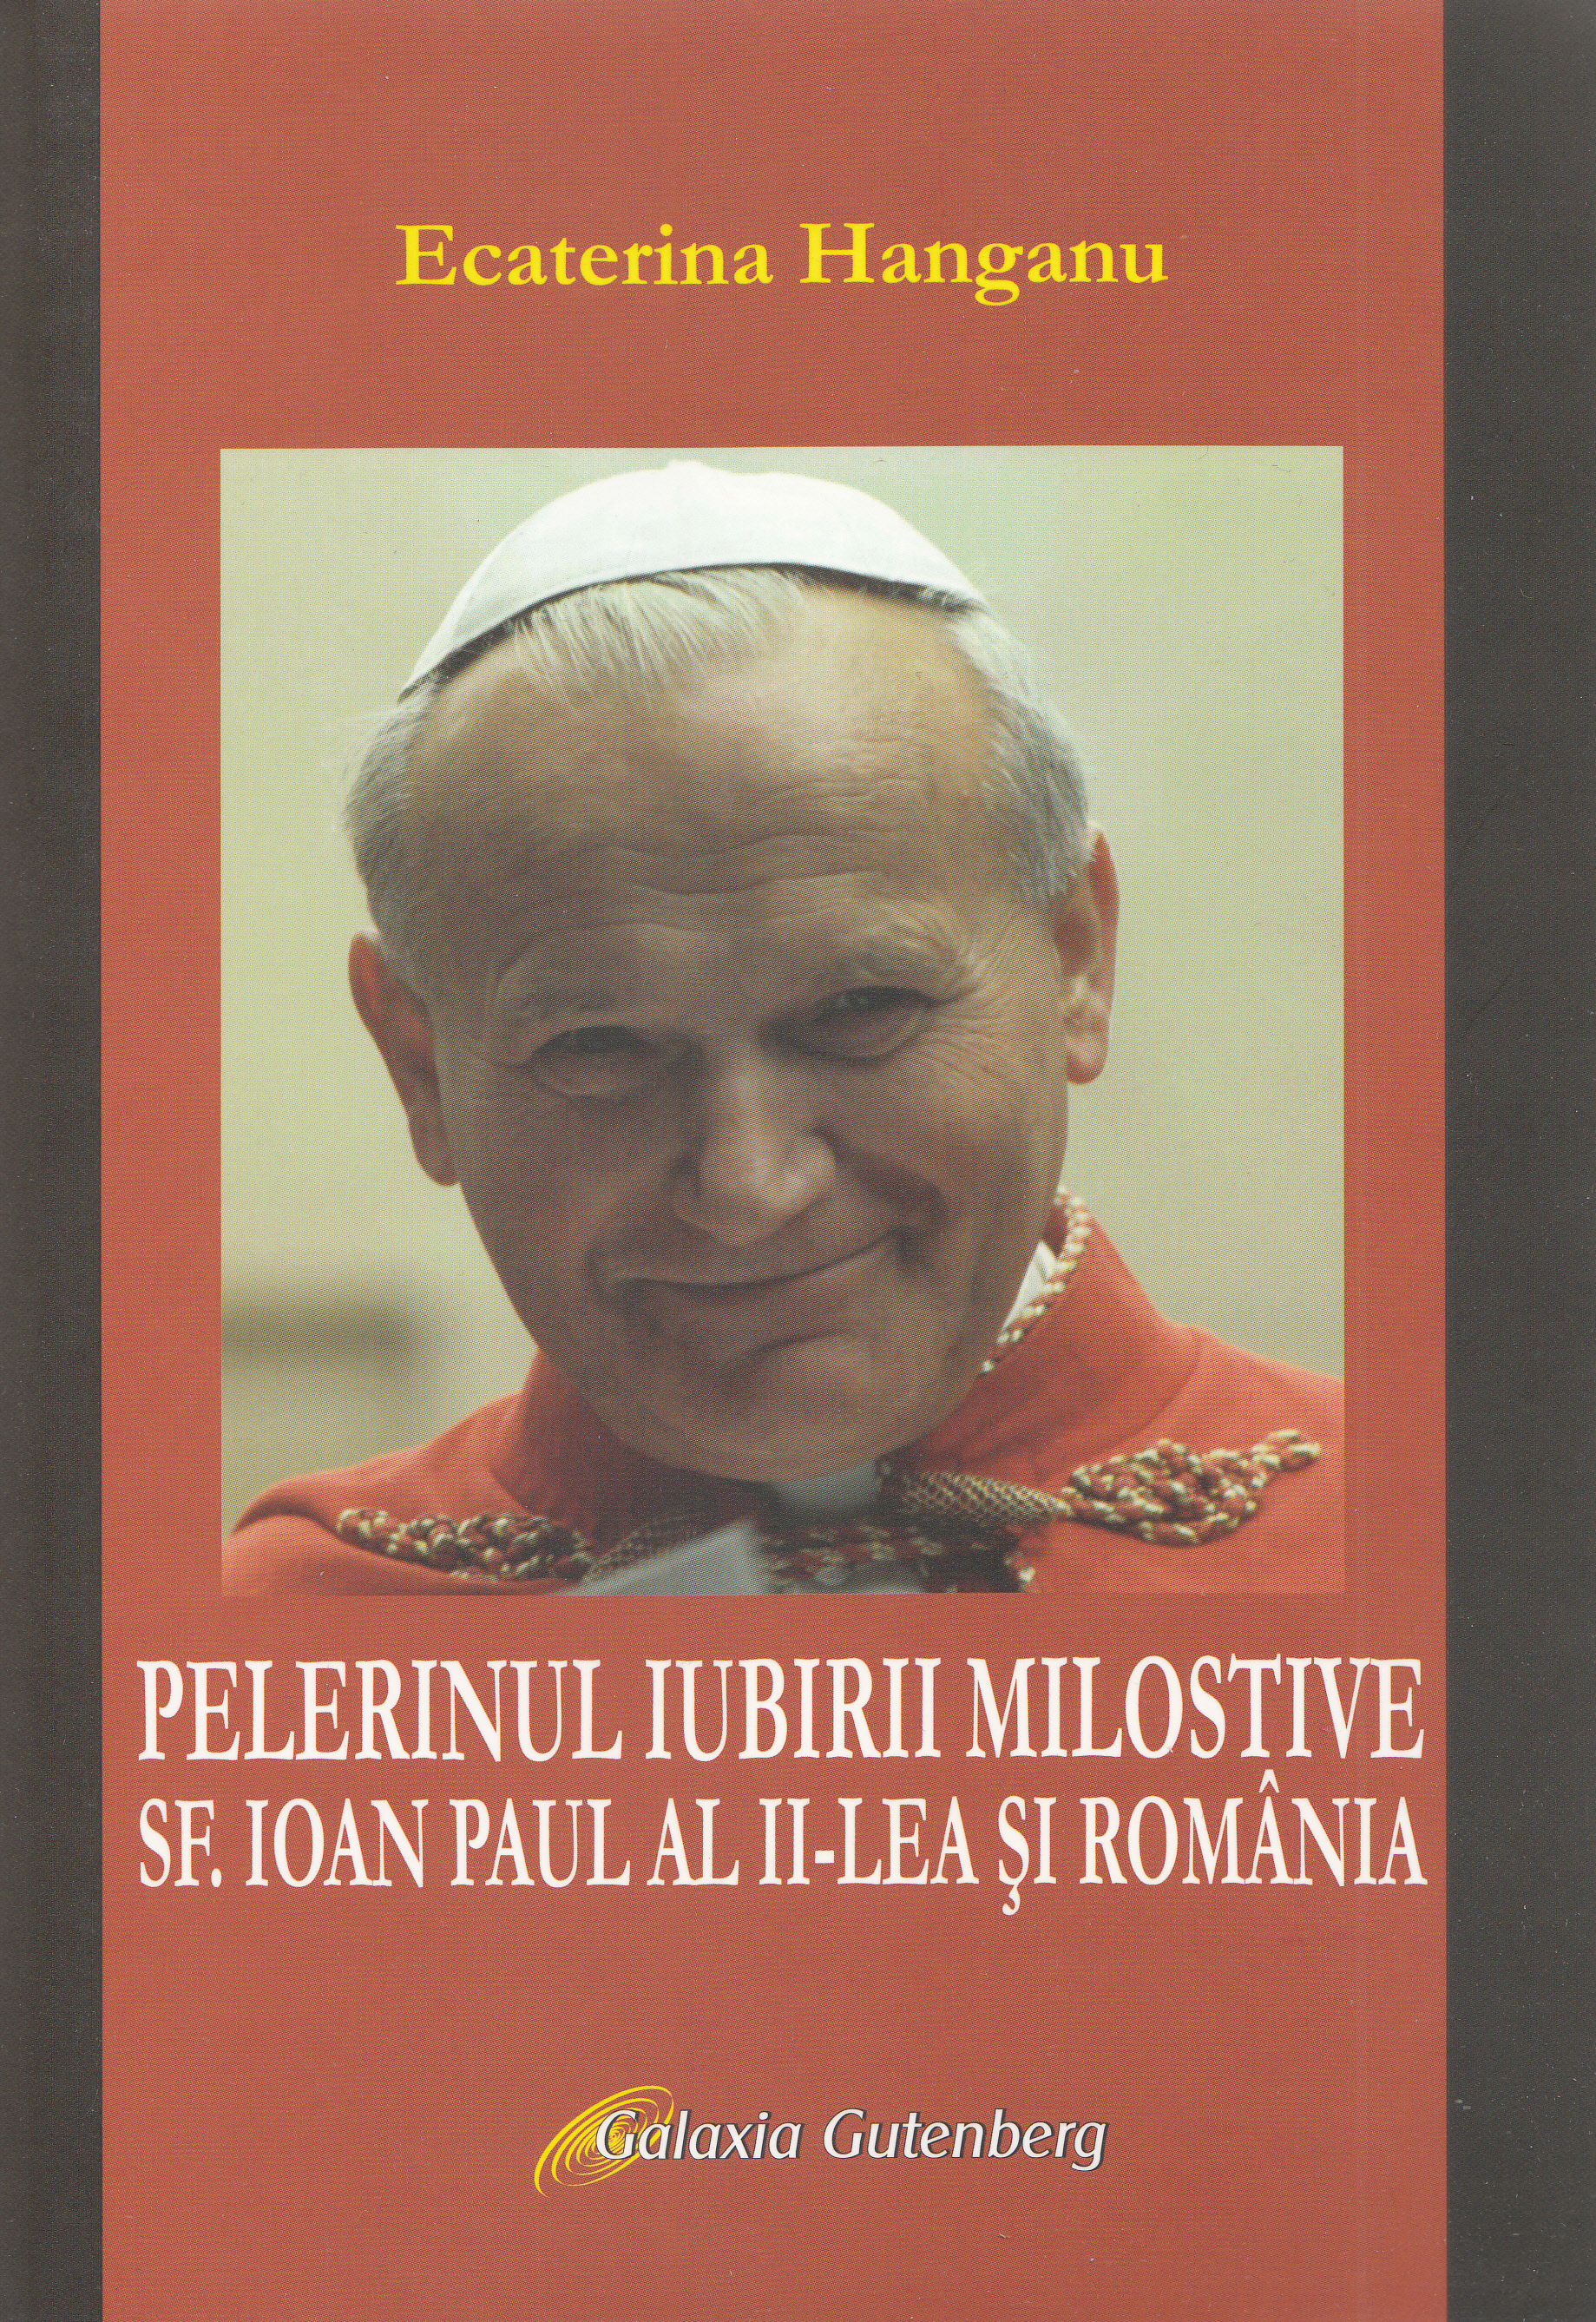 Pelerinul iubirii milostive. Sf. Ioan Paul al II-lea si Romania - Ecaterina Hanganu